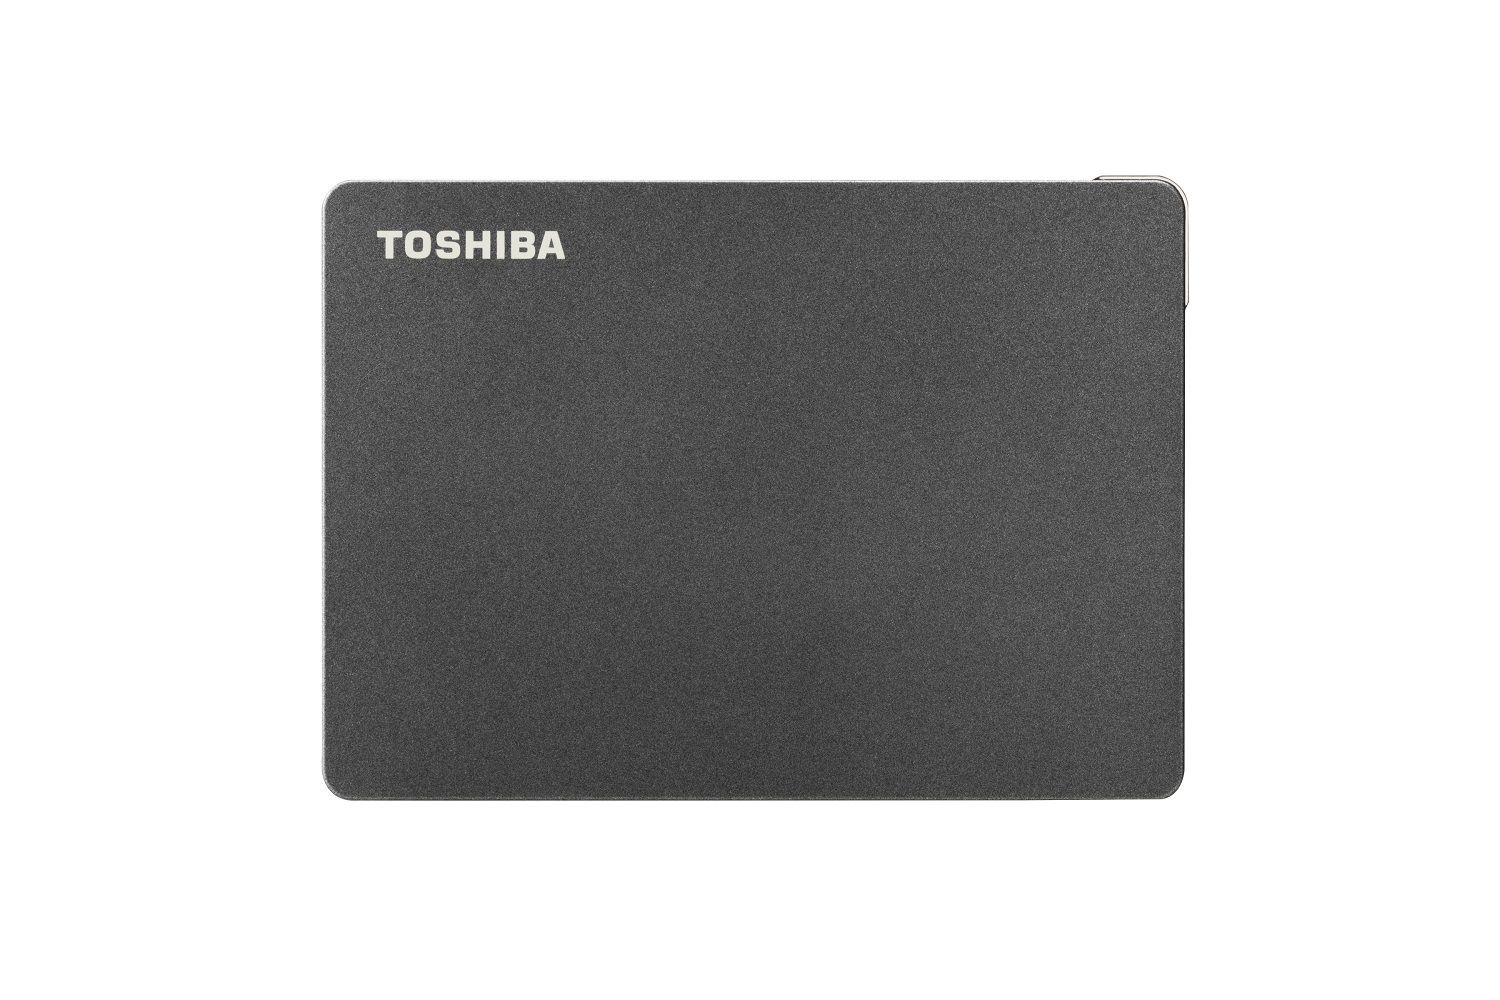 Disco Duro Externo Toshiba 2tb Gamer - Zonaportatil